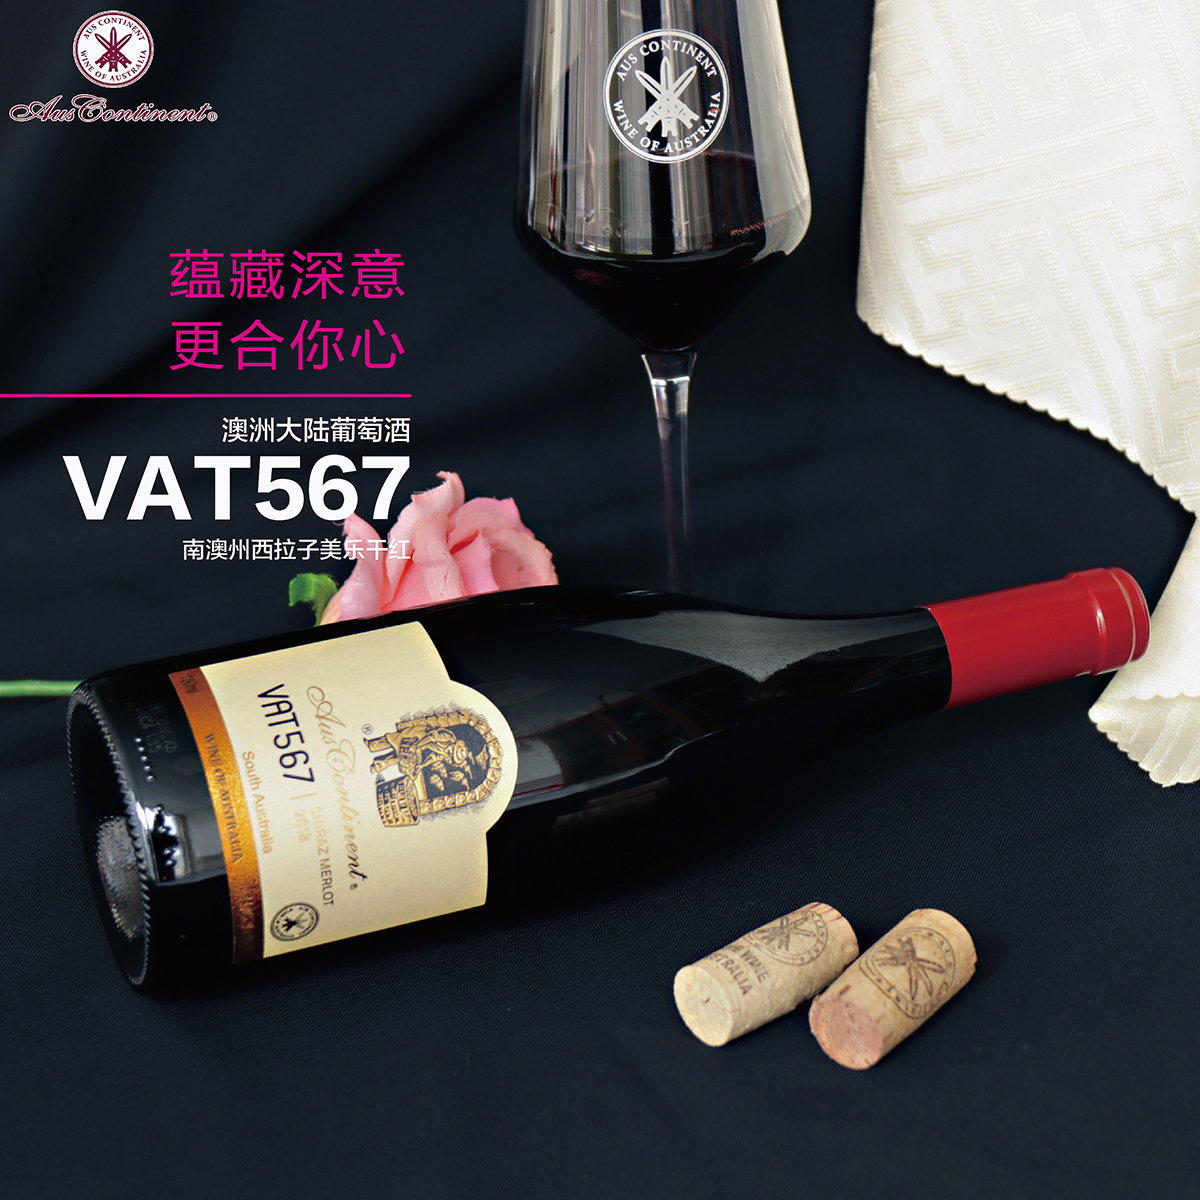 澳大利亚南澳产区澳洲大陆酒庄西拉子美乐VAT 567 干红葡萄酒红酒